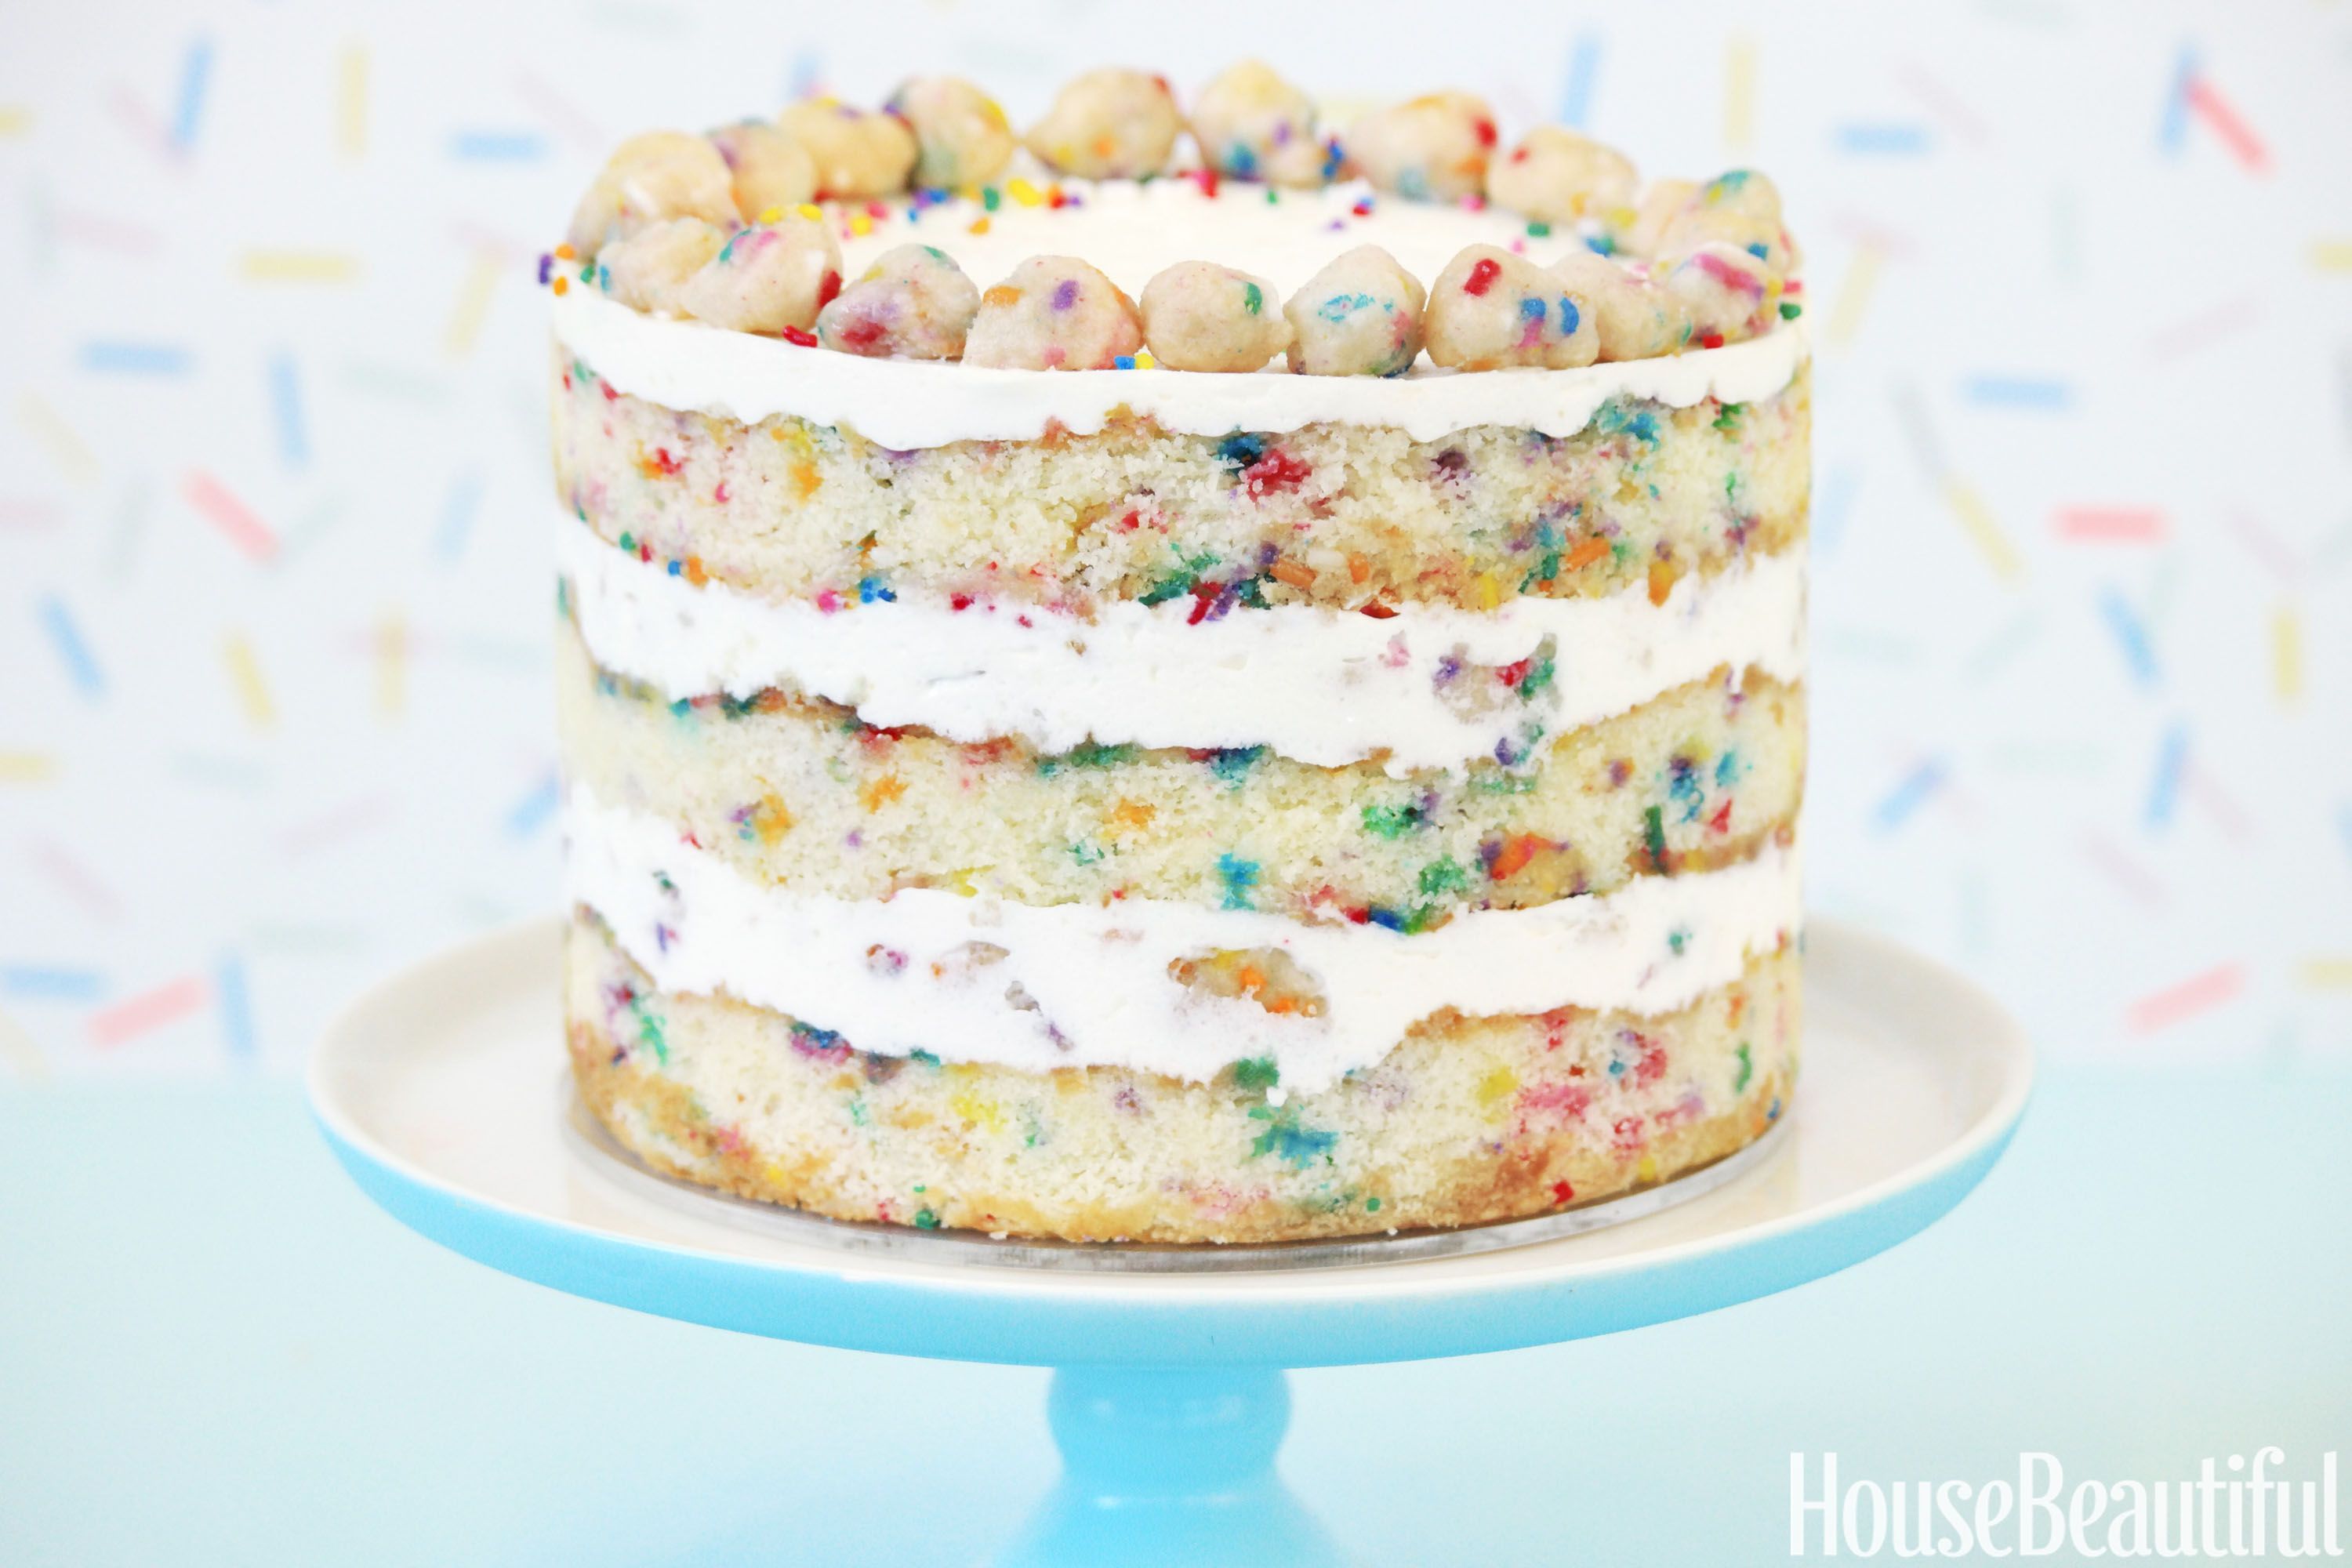 Birthday Cake: Bolo de Aniversário da Christina Tosi